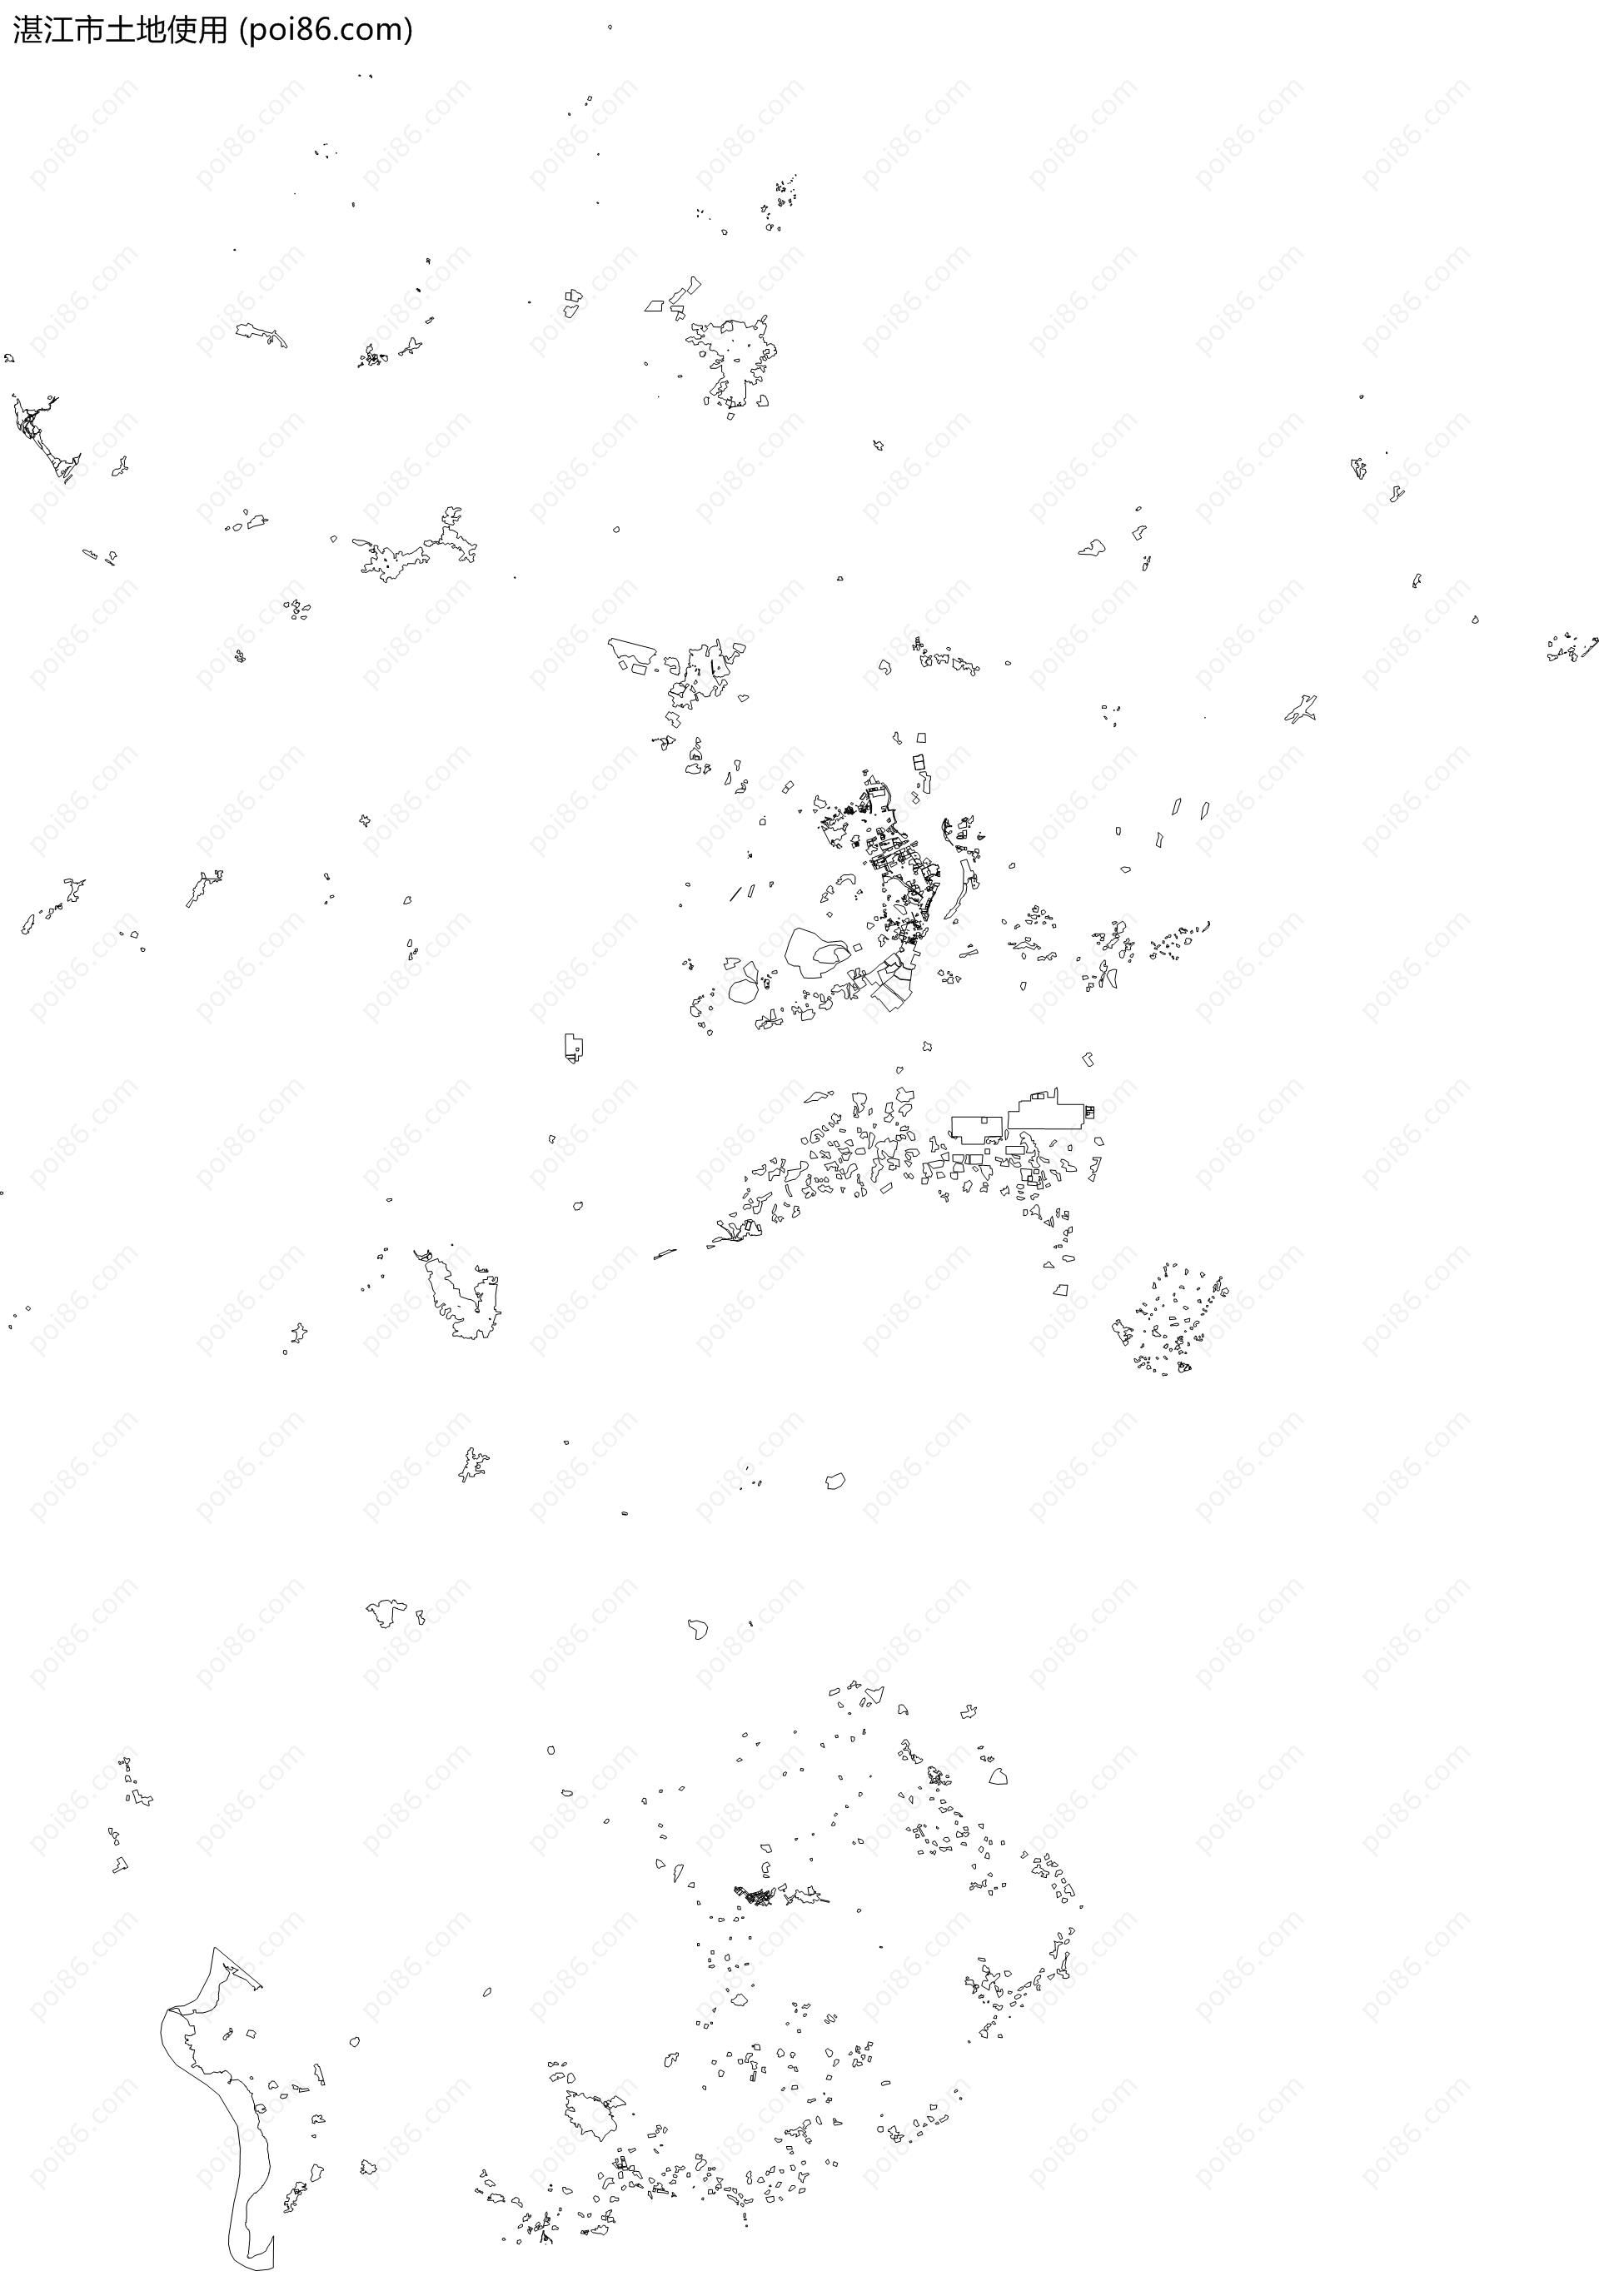 湛江市土地使用地图